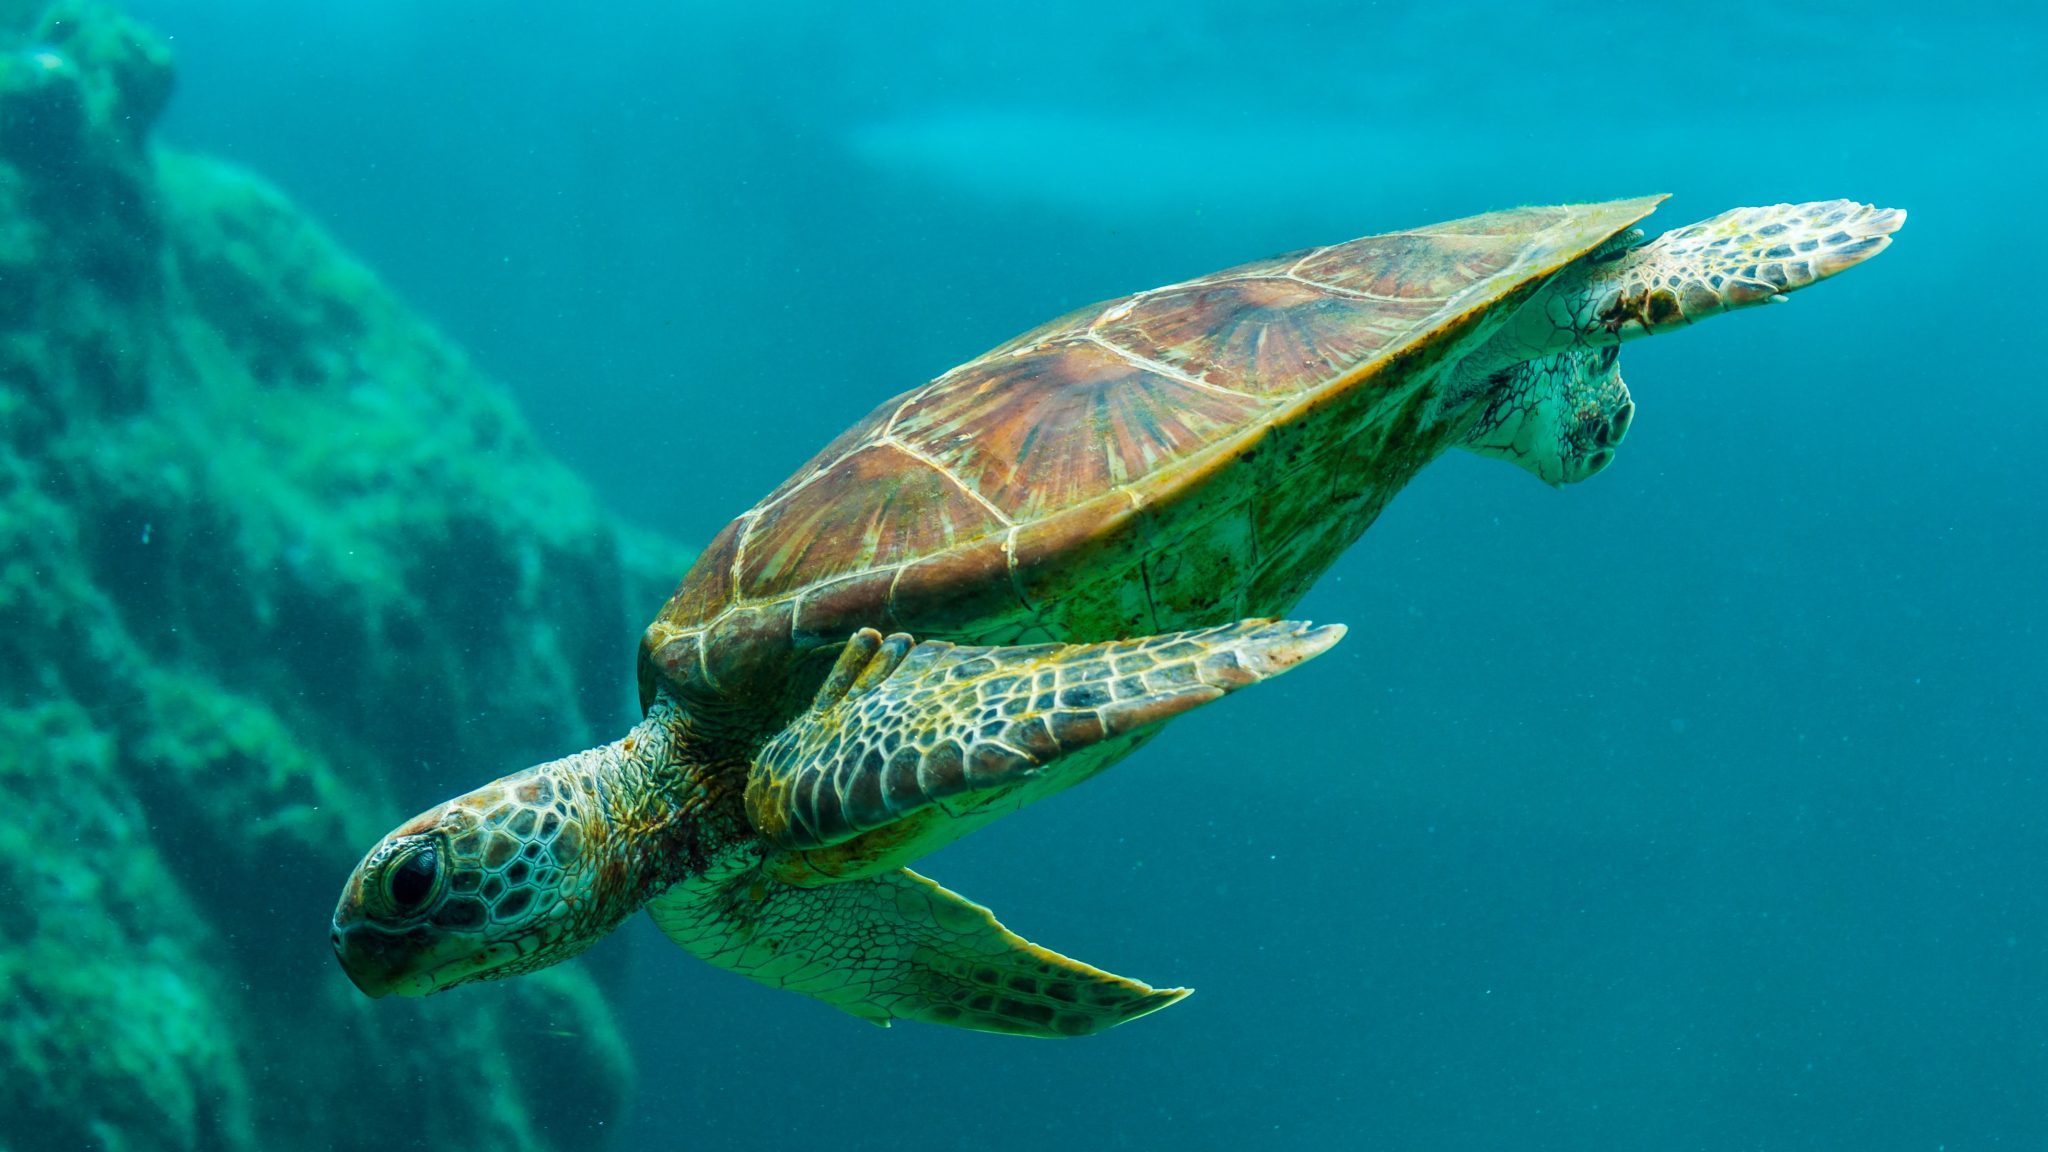 Les tortues marines sont des indicateurs de qualité environnementale